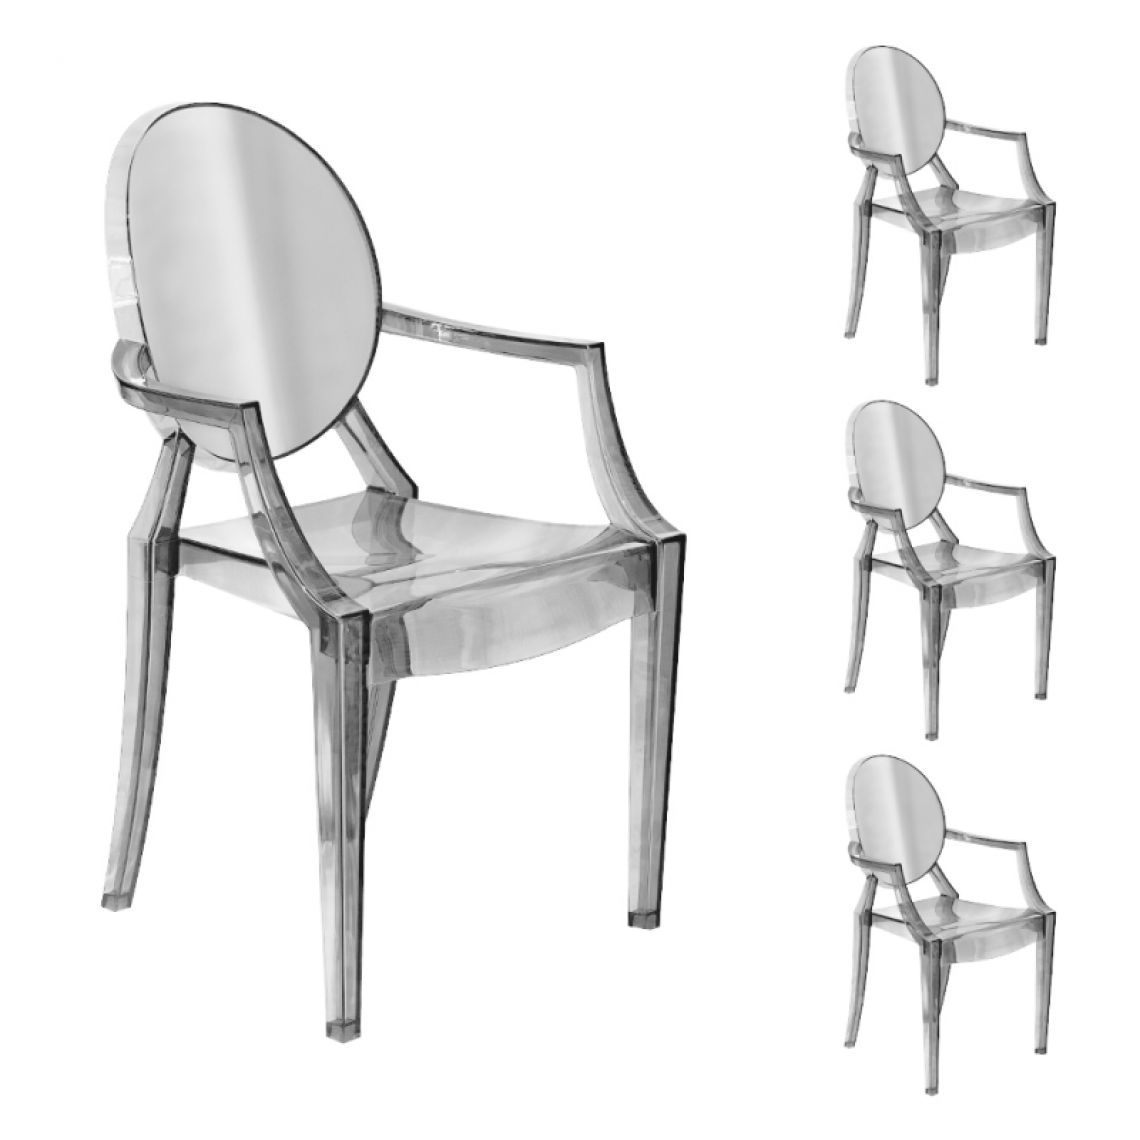 Webmarketpoint - Chaise de salle à manger avec accoudoirs en polycarbonate transparent 54x48,5x h92 cm 4 pièces - Chaises